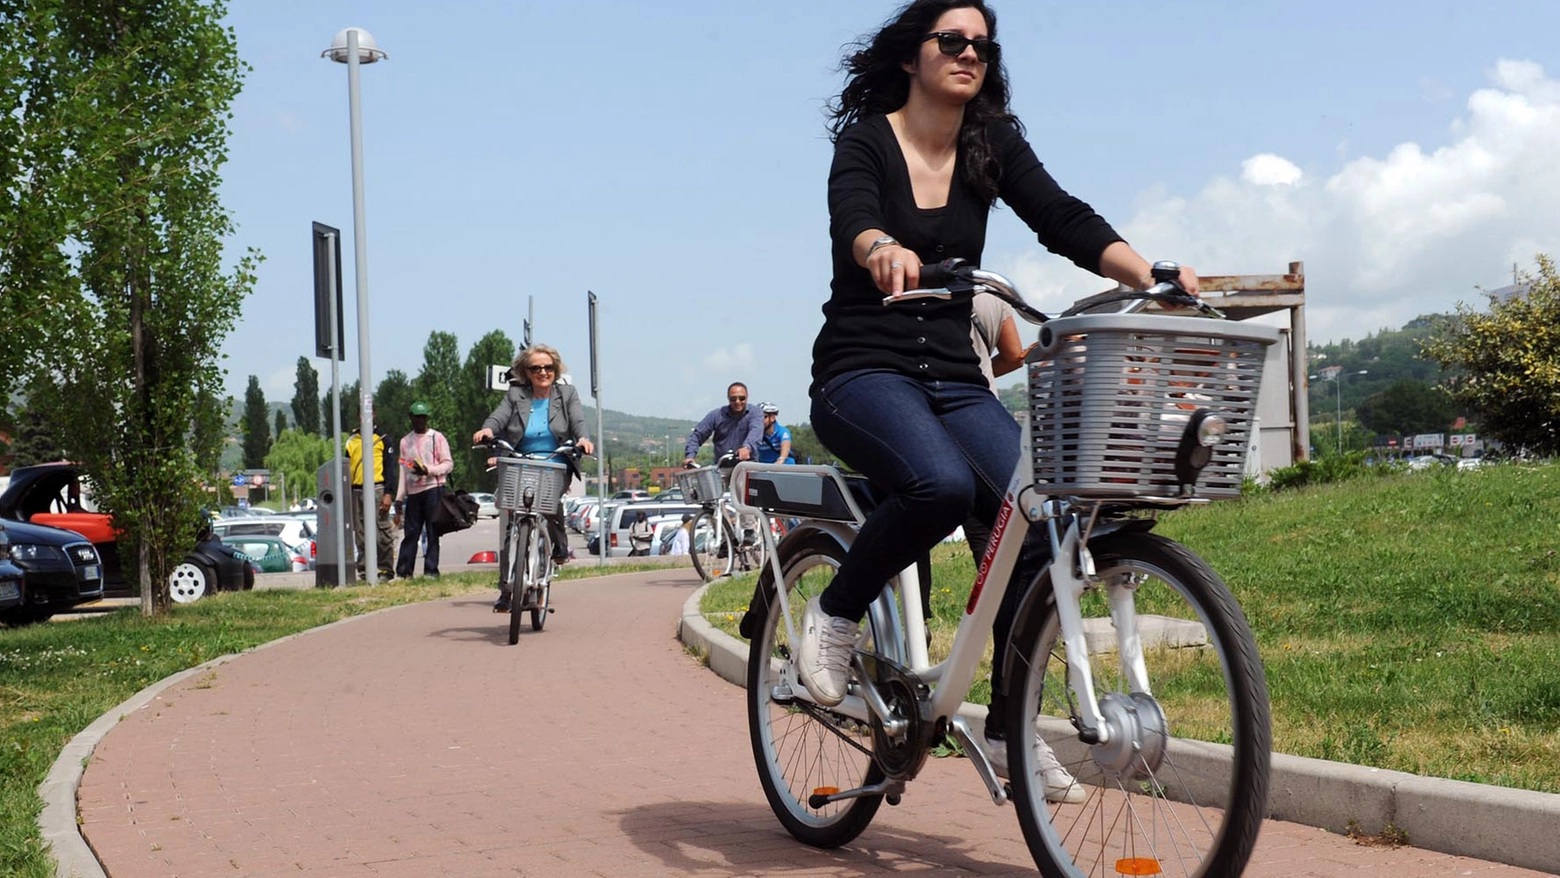 Molte Regioni programmano sostegni per piste ciclabili e pratiche virtuose. In Emilia Romagna migliaia di aziende e cittadini hanno aderito alle iniziative